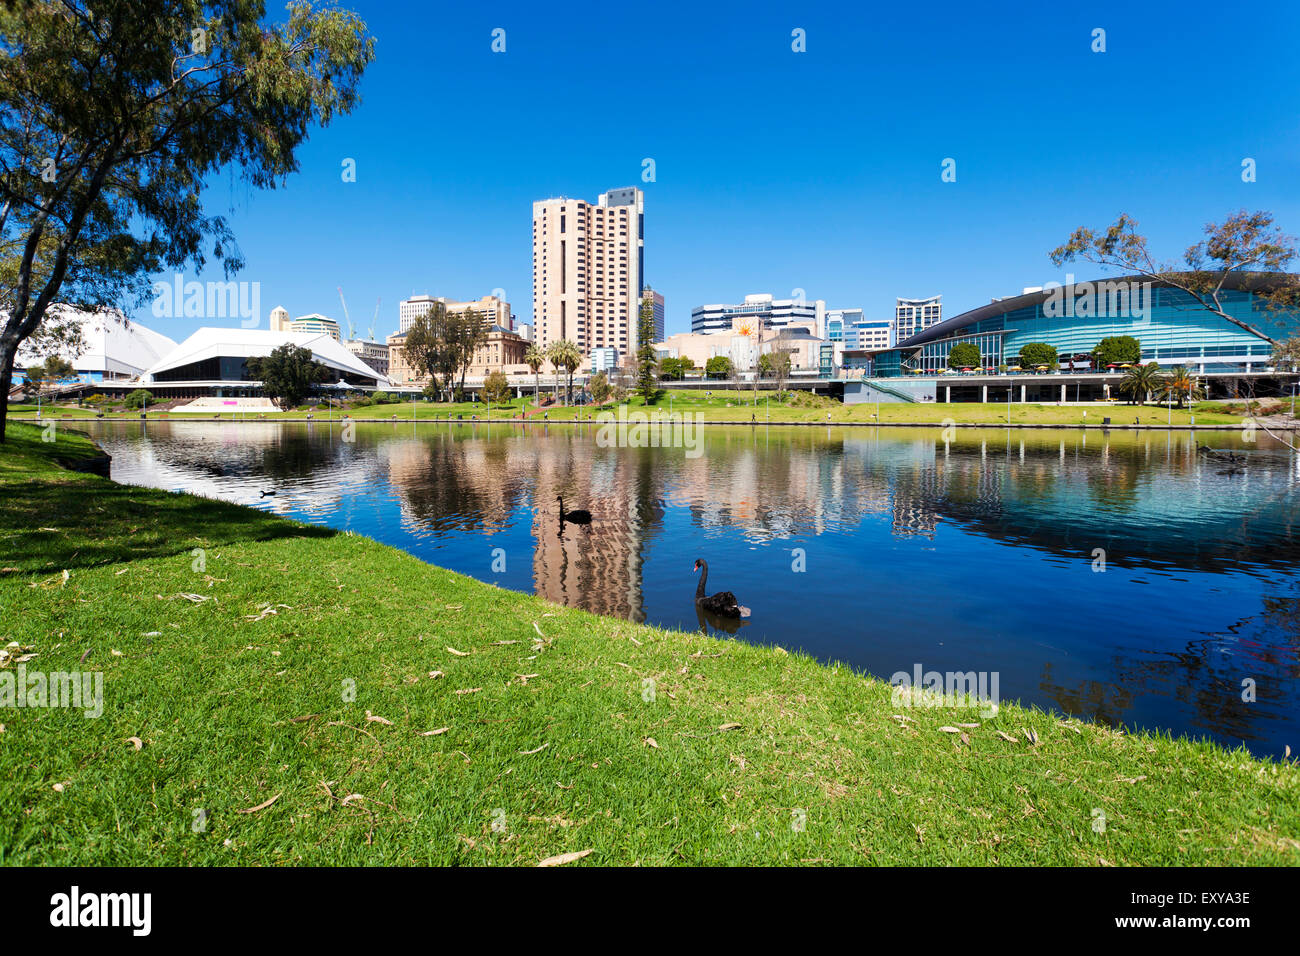 Adelaide city Stock Photo